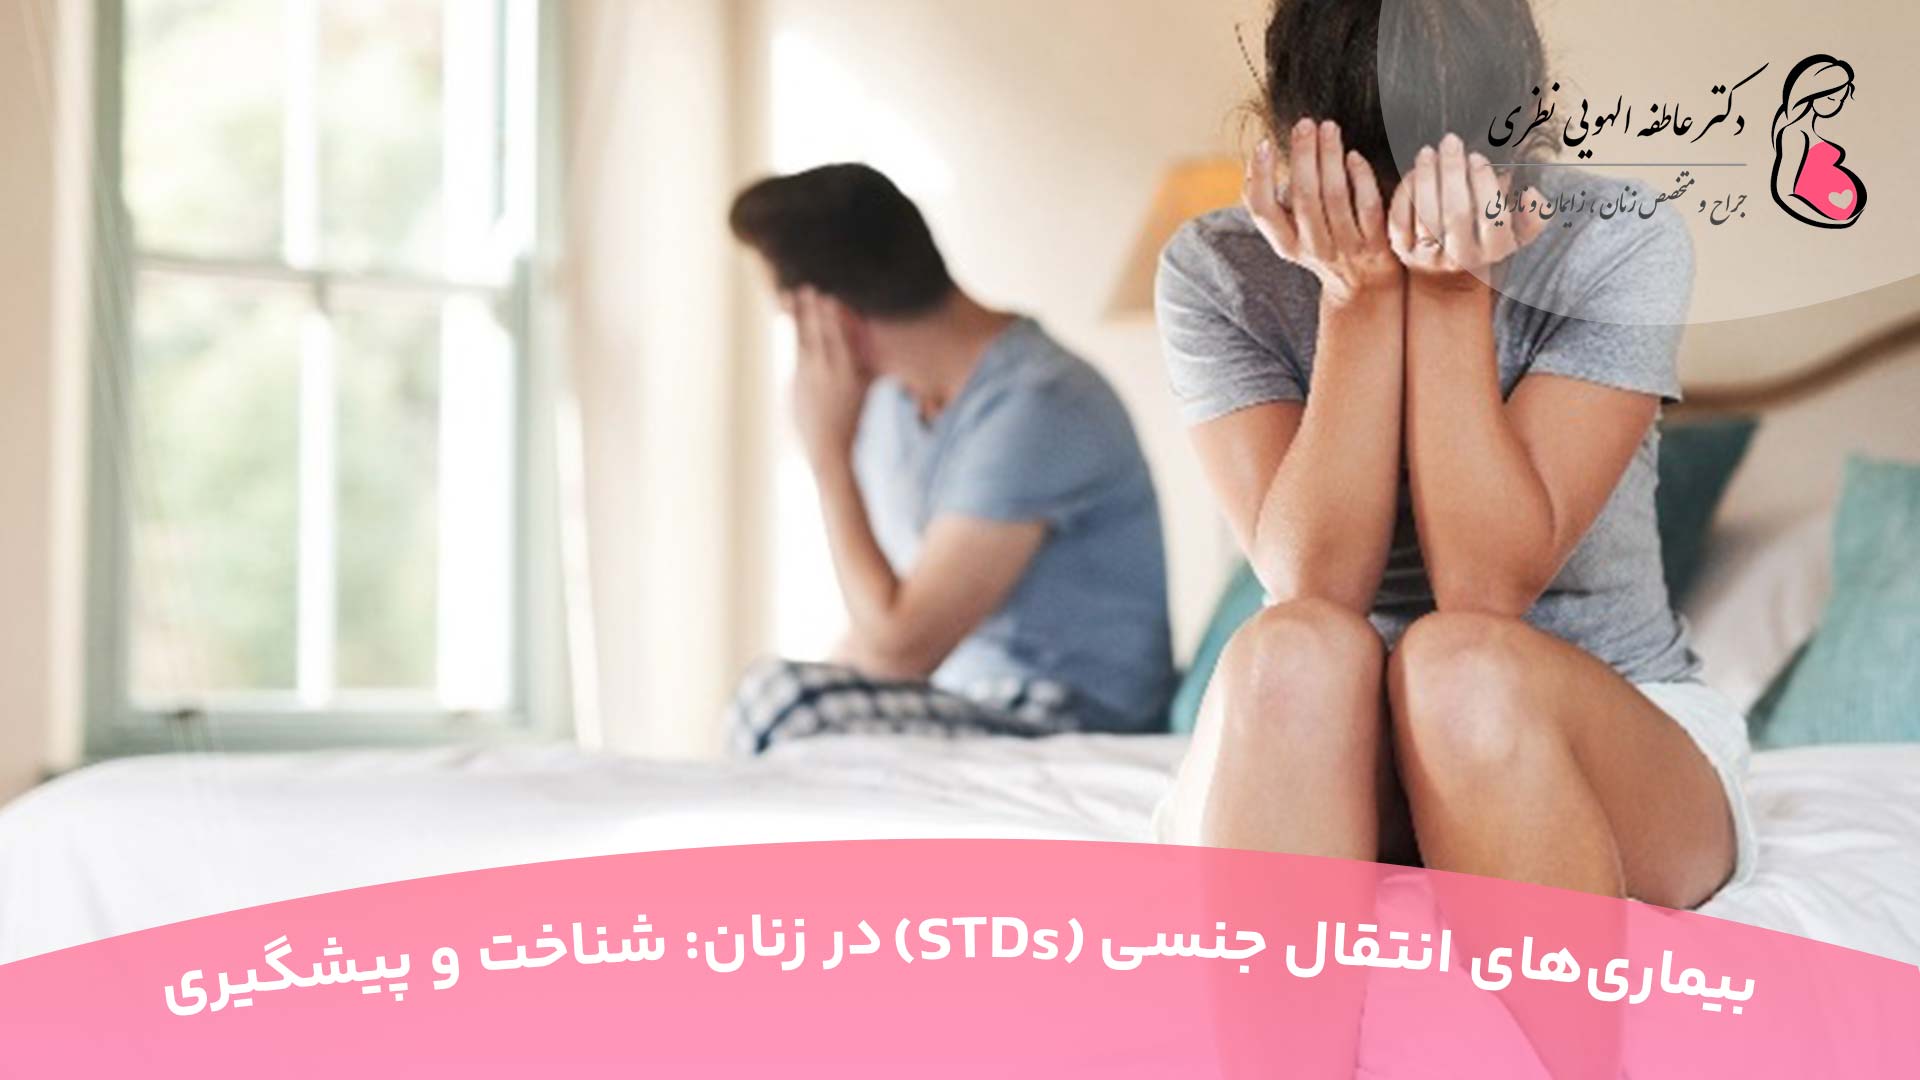 بیماری های انتقالی از طریق رابطه جنسی در زنان (STDs)